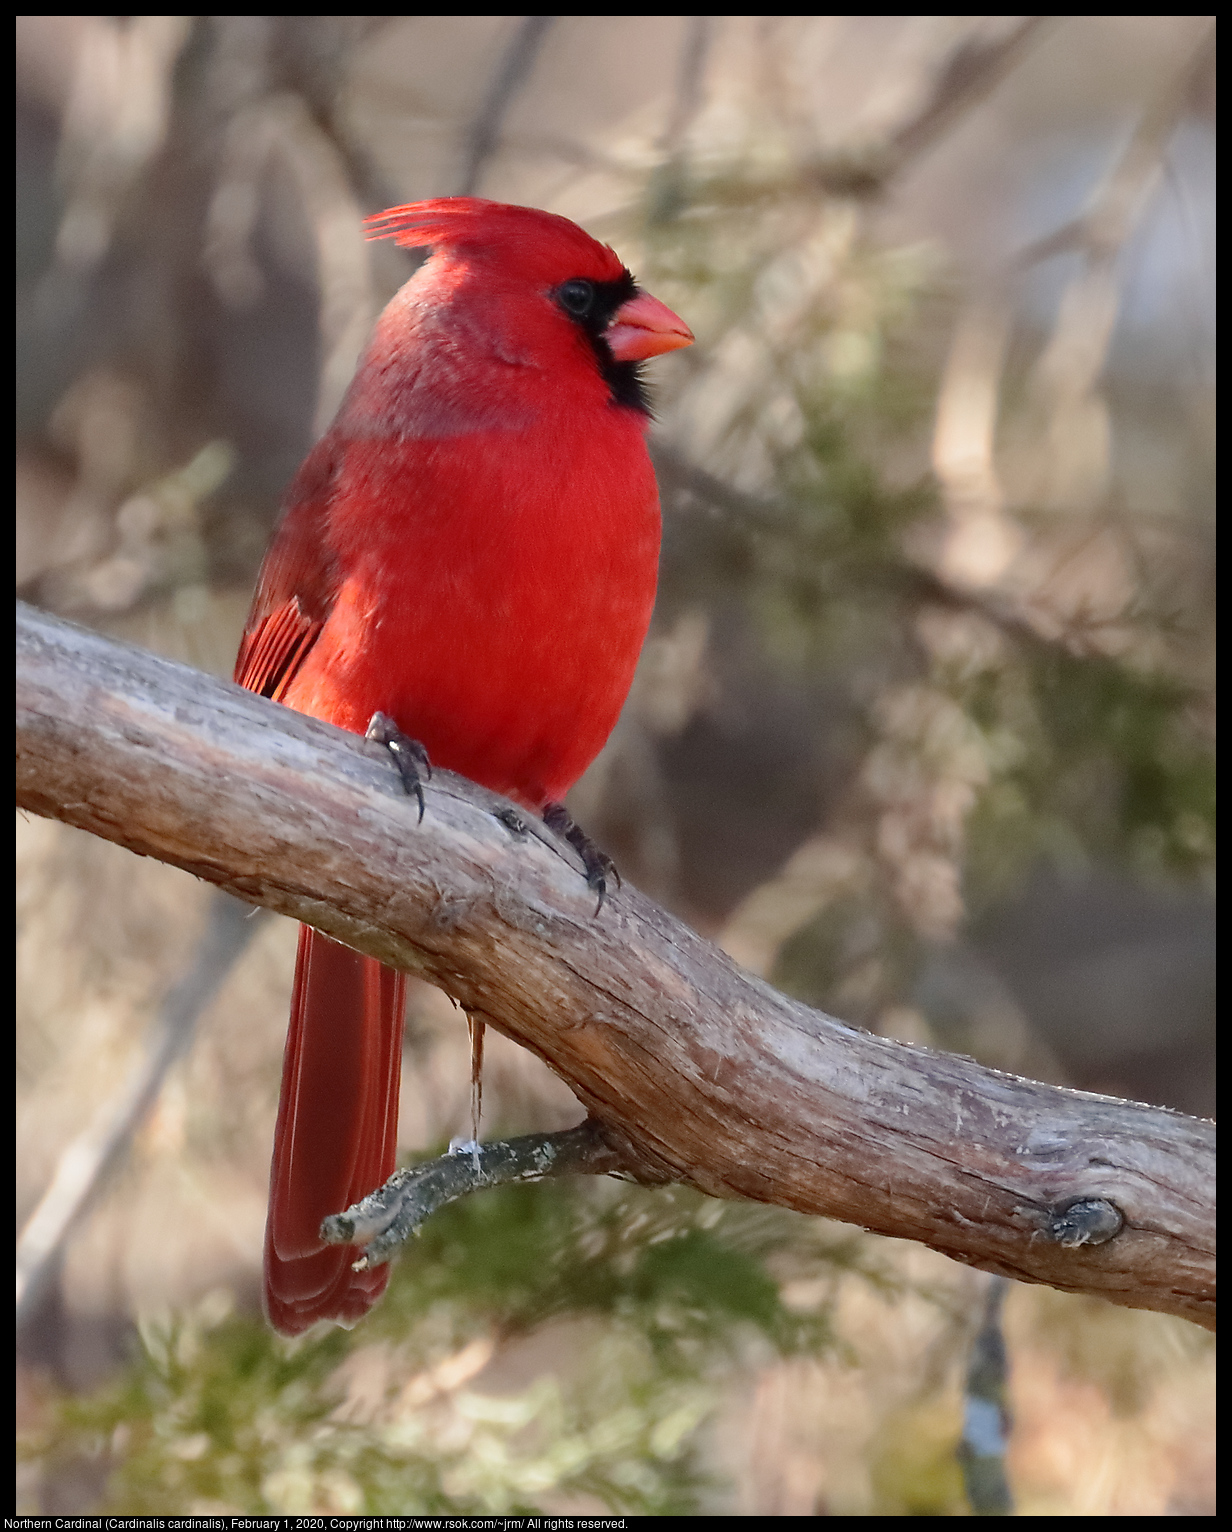 Northern Cardinal (Cardinalis cardinalis), February 1, 2020